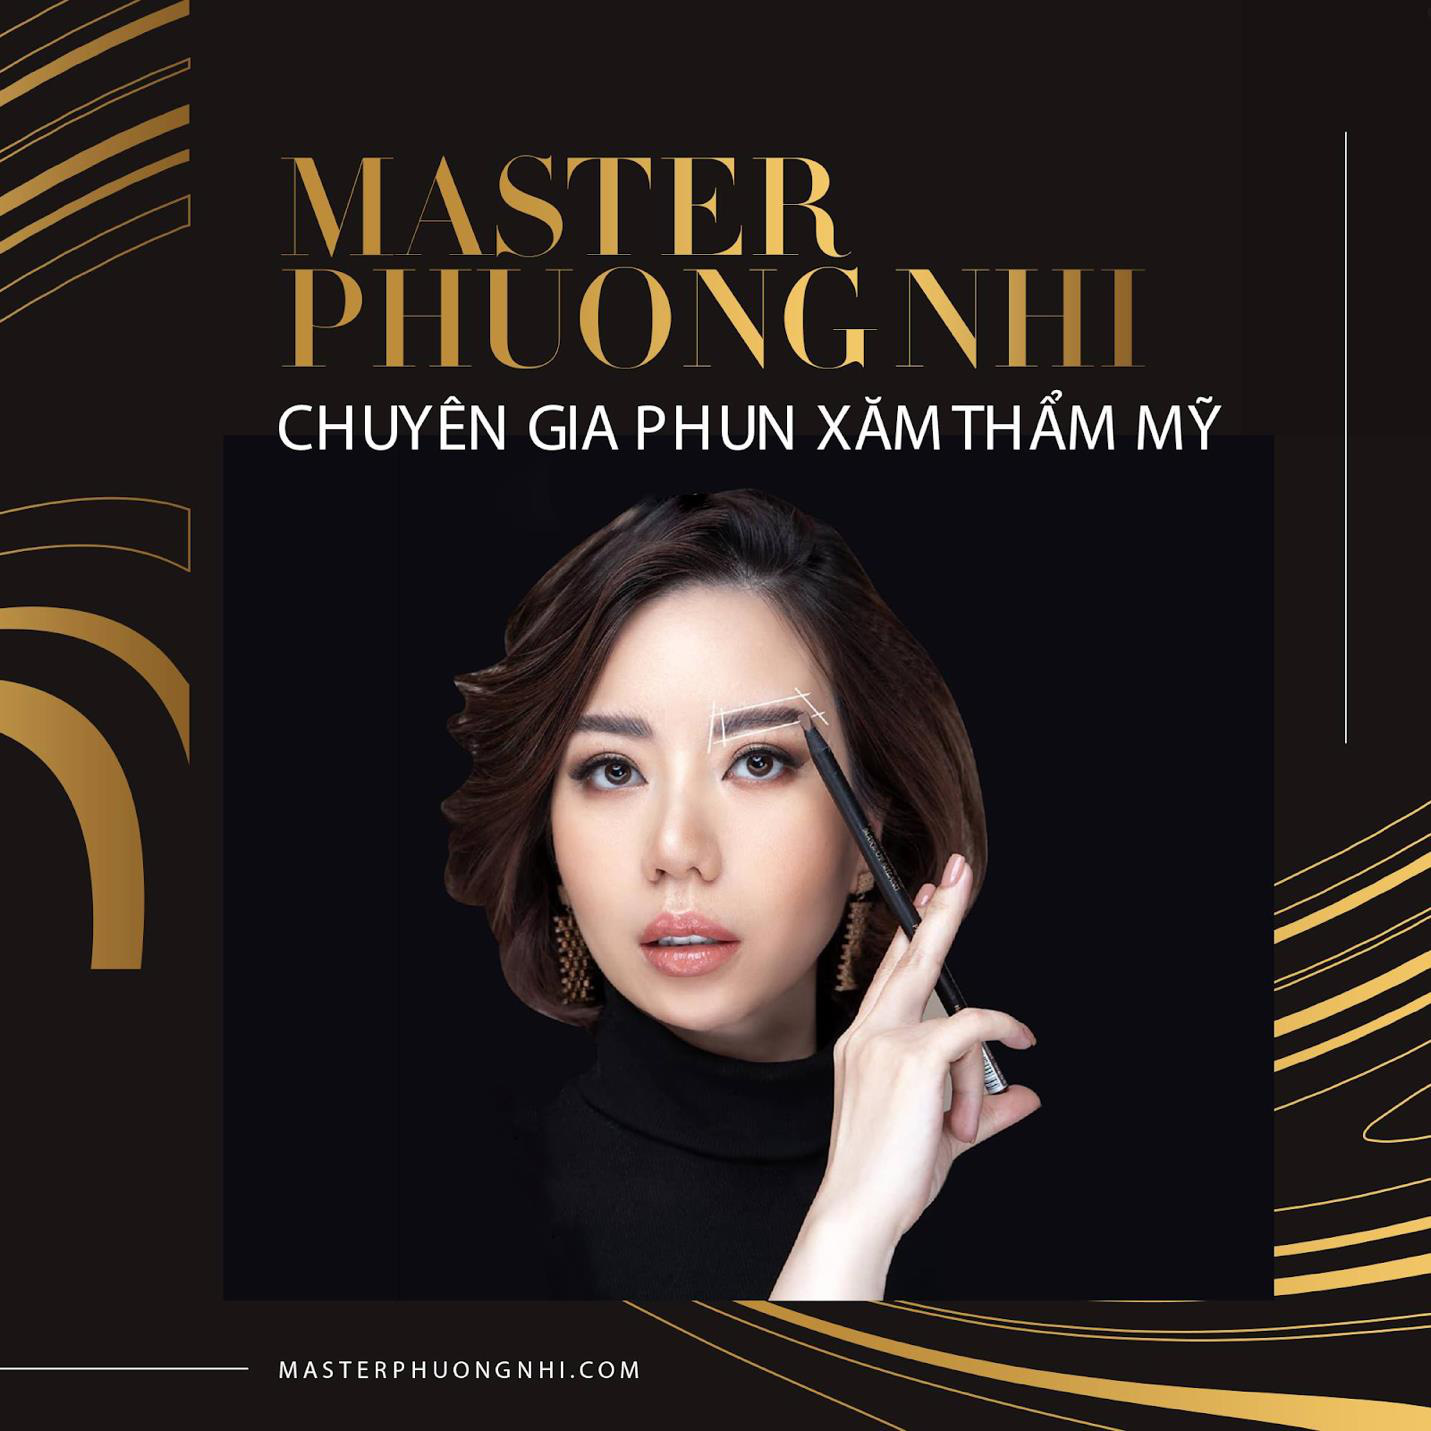 Master Phương Nhi – Bàn tay vàng kiến tạo sắc đẹp cho phụ nữ Việt - Ảnh 1.